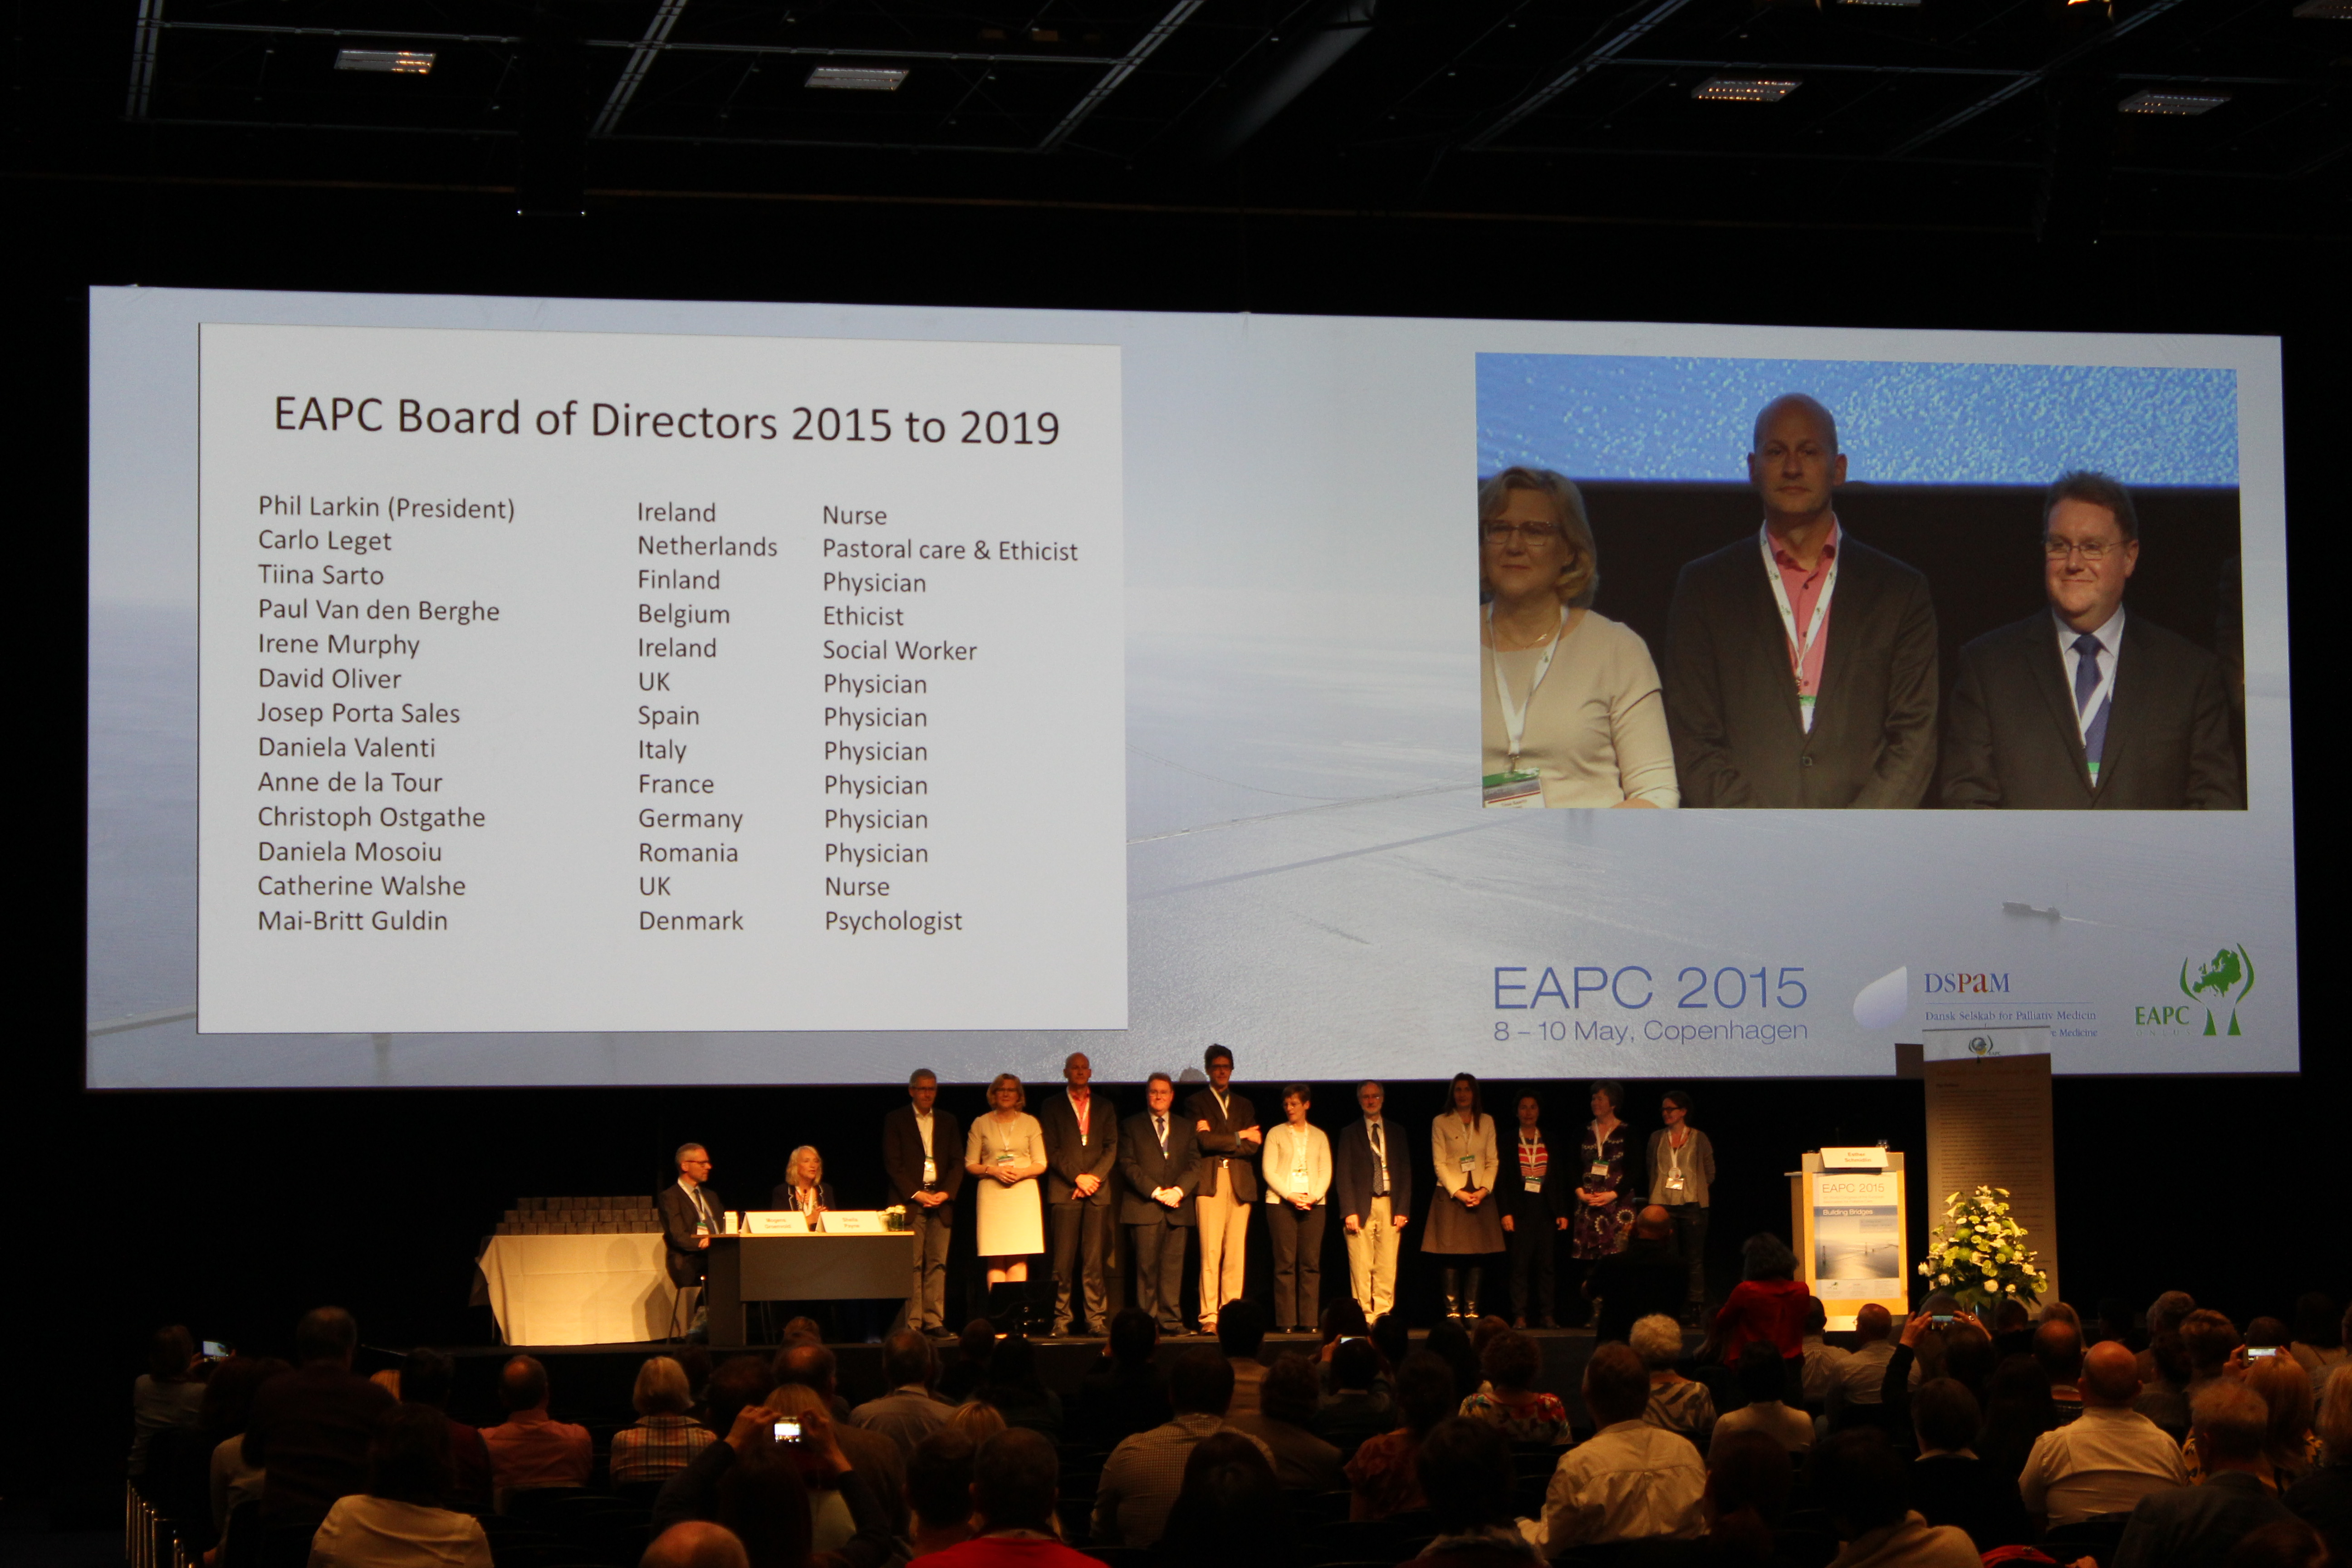 EAPC Board members 2015